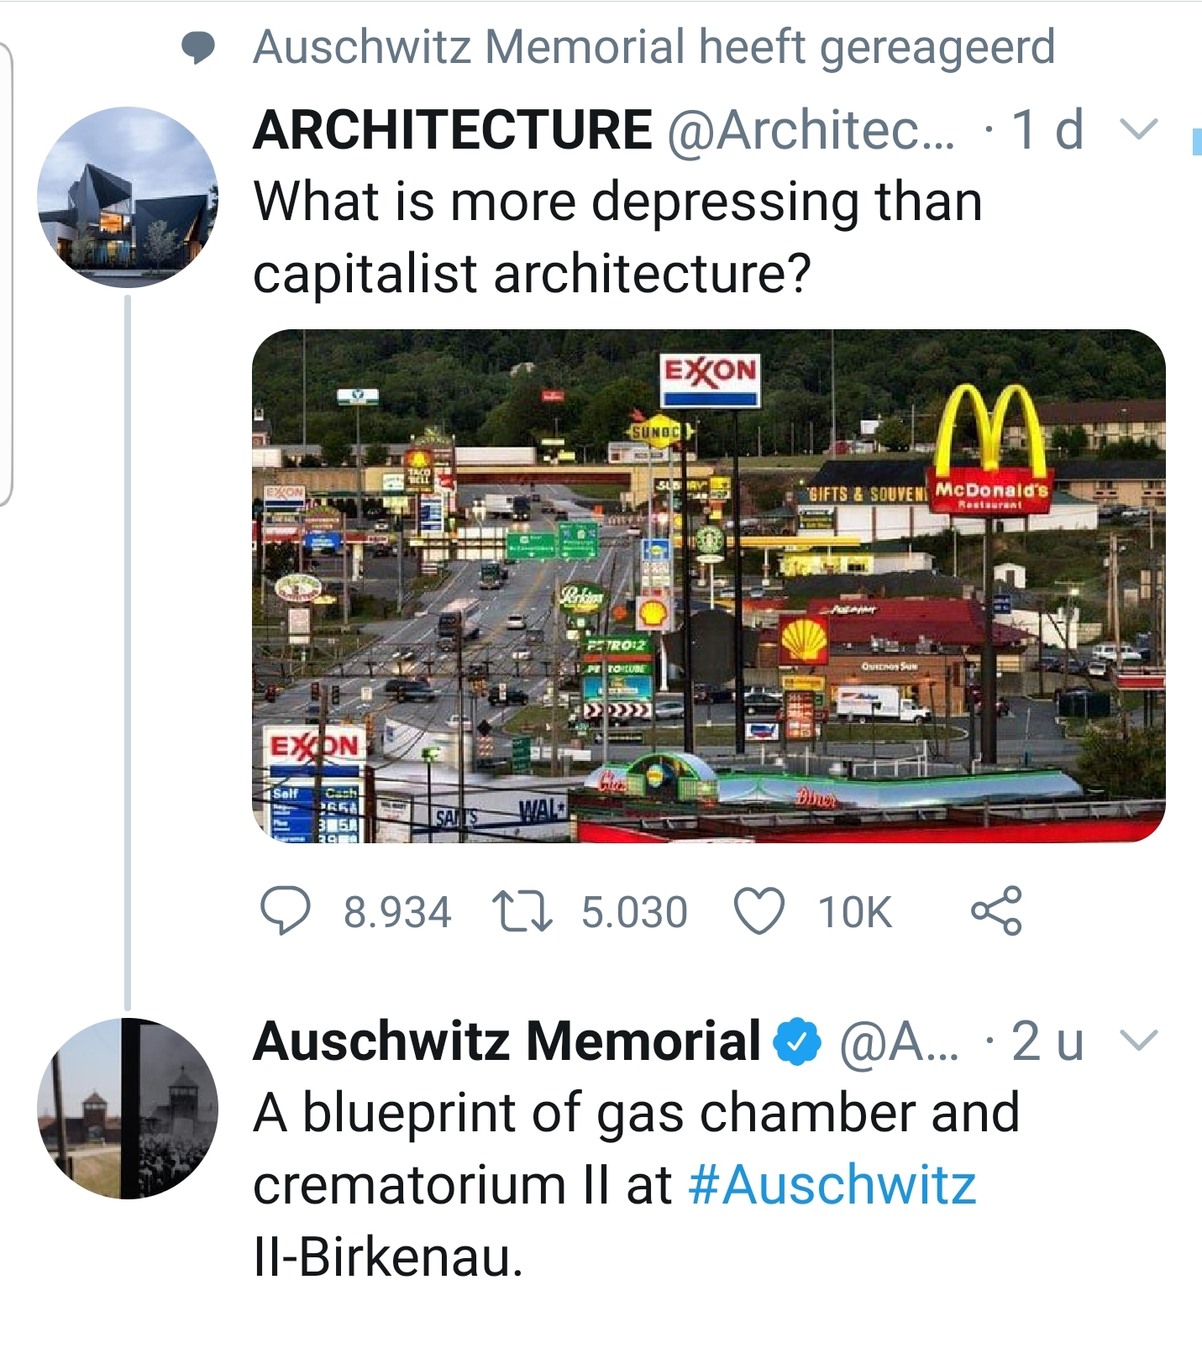 Cursed_architecture - meme